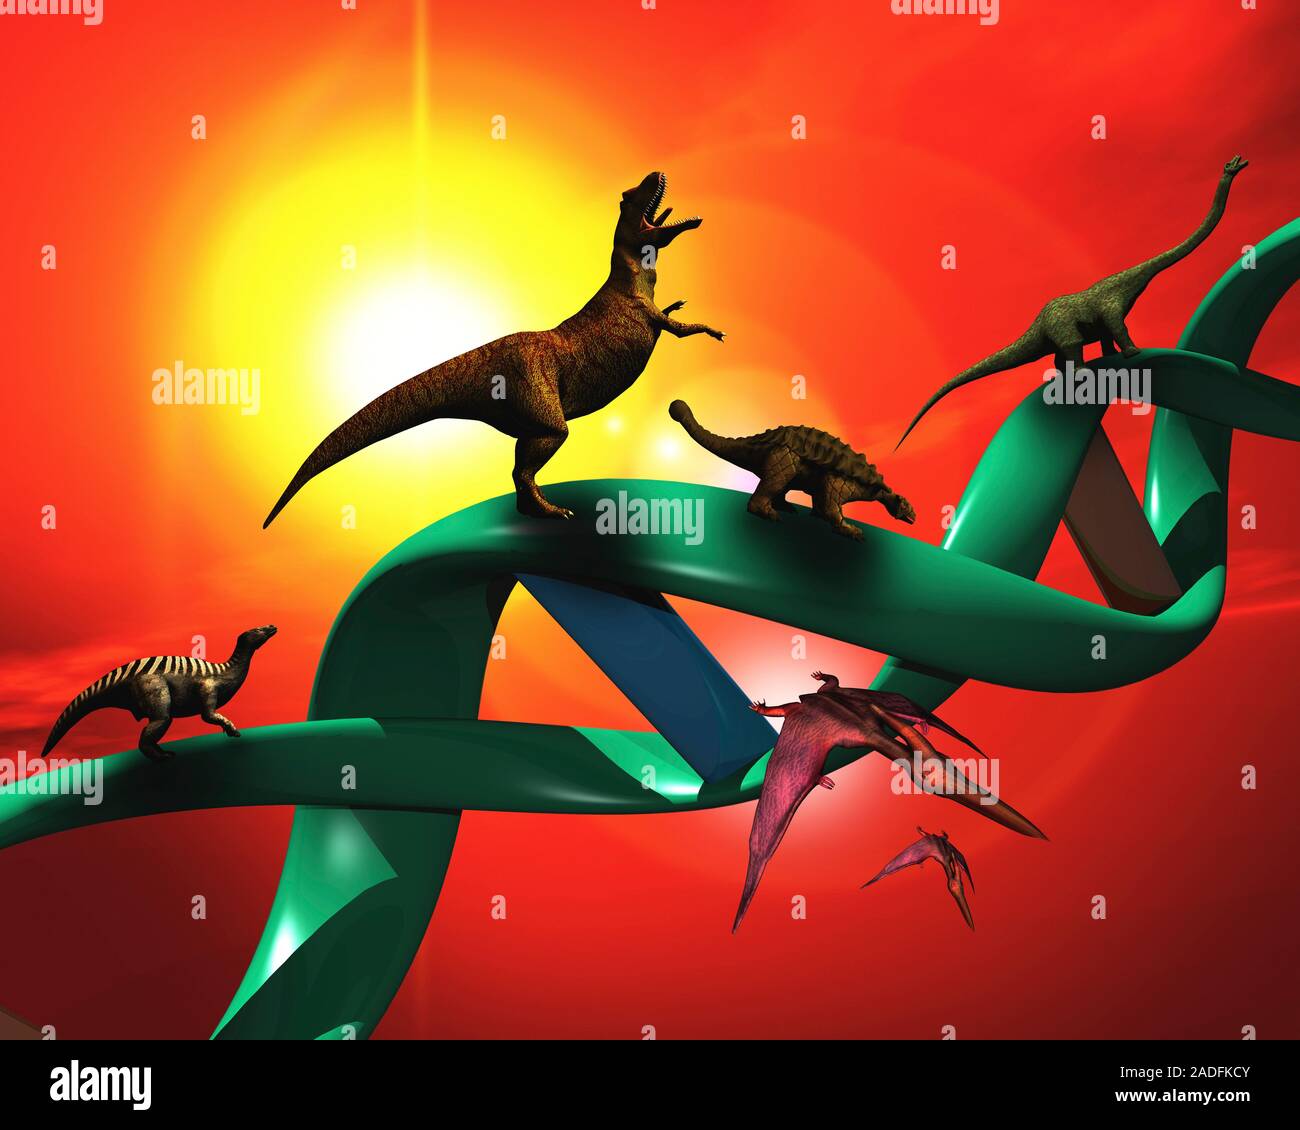 Adn de dinosaurio. Equipo de ilustraciones de dinosaurios subiendo una  hélice doble que representa el concepto de la clonación de un dinosaurio a  partir de ADN de dinosaurio preservada (deoxyr Fotografía de